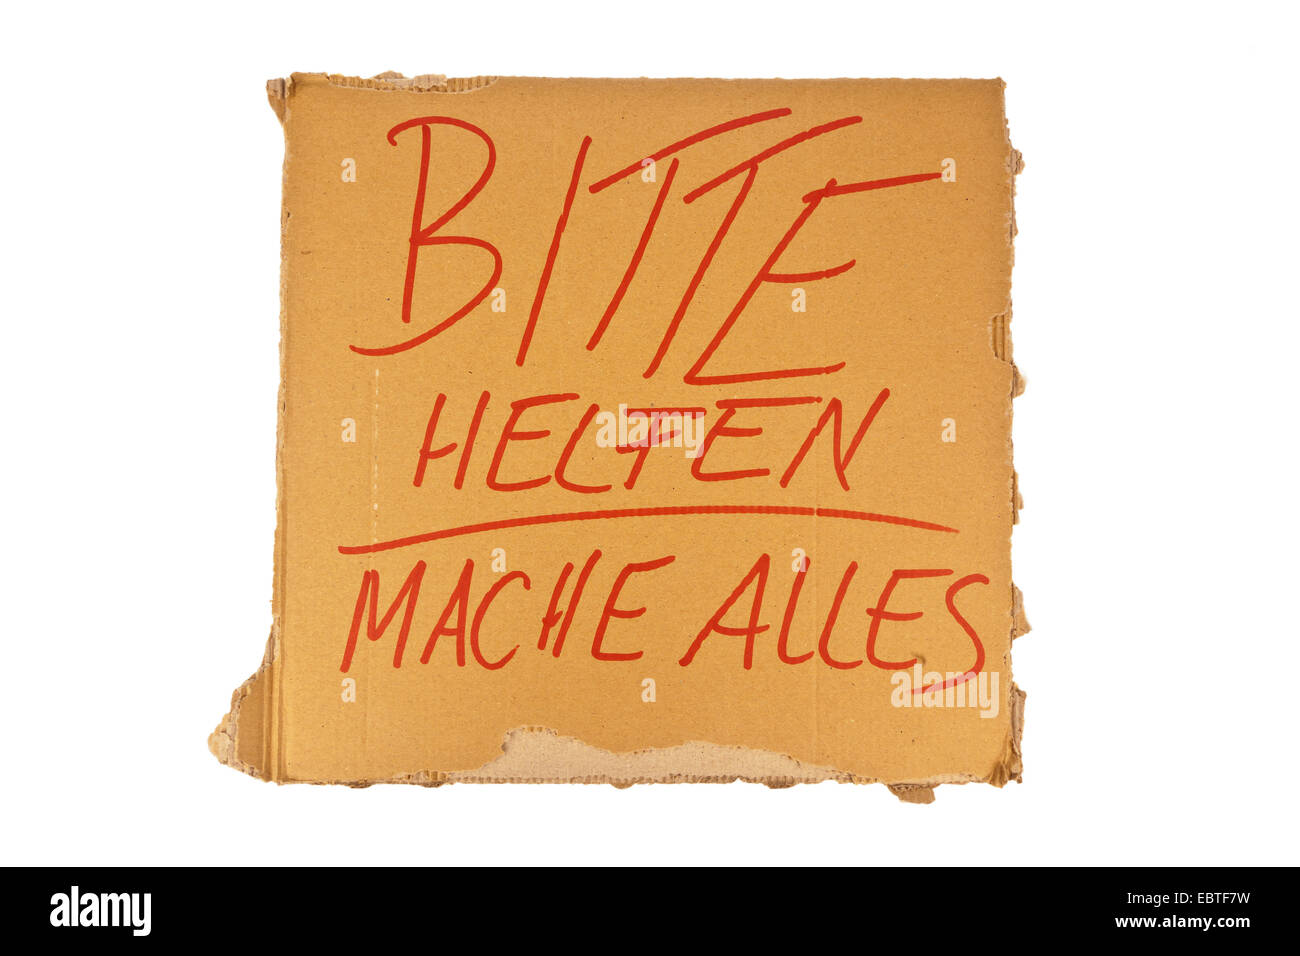 Segno di cartone di un lavoro di ricerca di persona senza dimora con la scritta "Bitte helfen - mache alles" ("Please help - posso fare nulla") Foto Stock